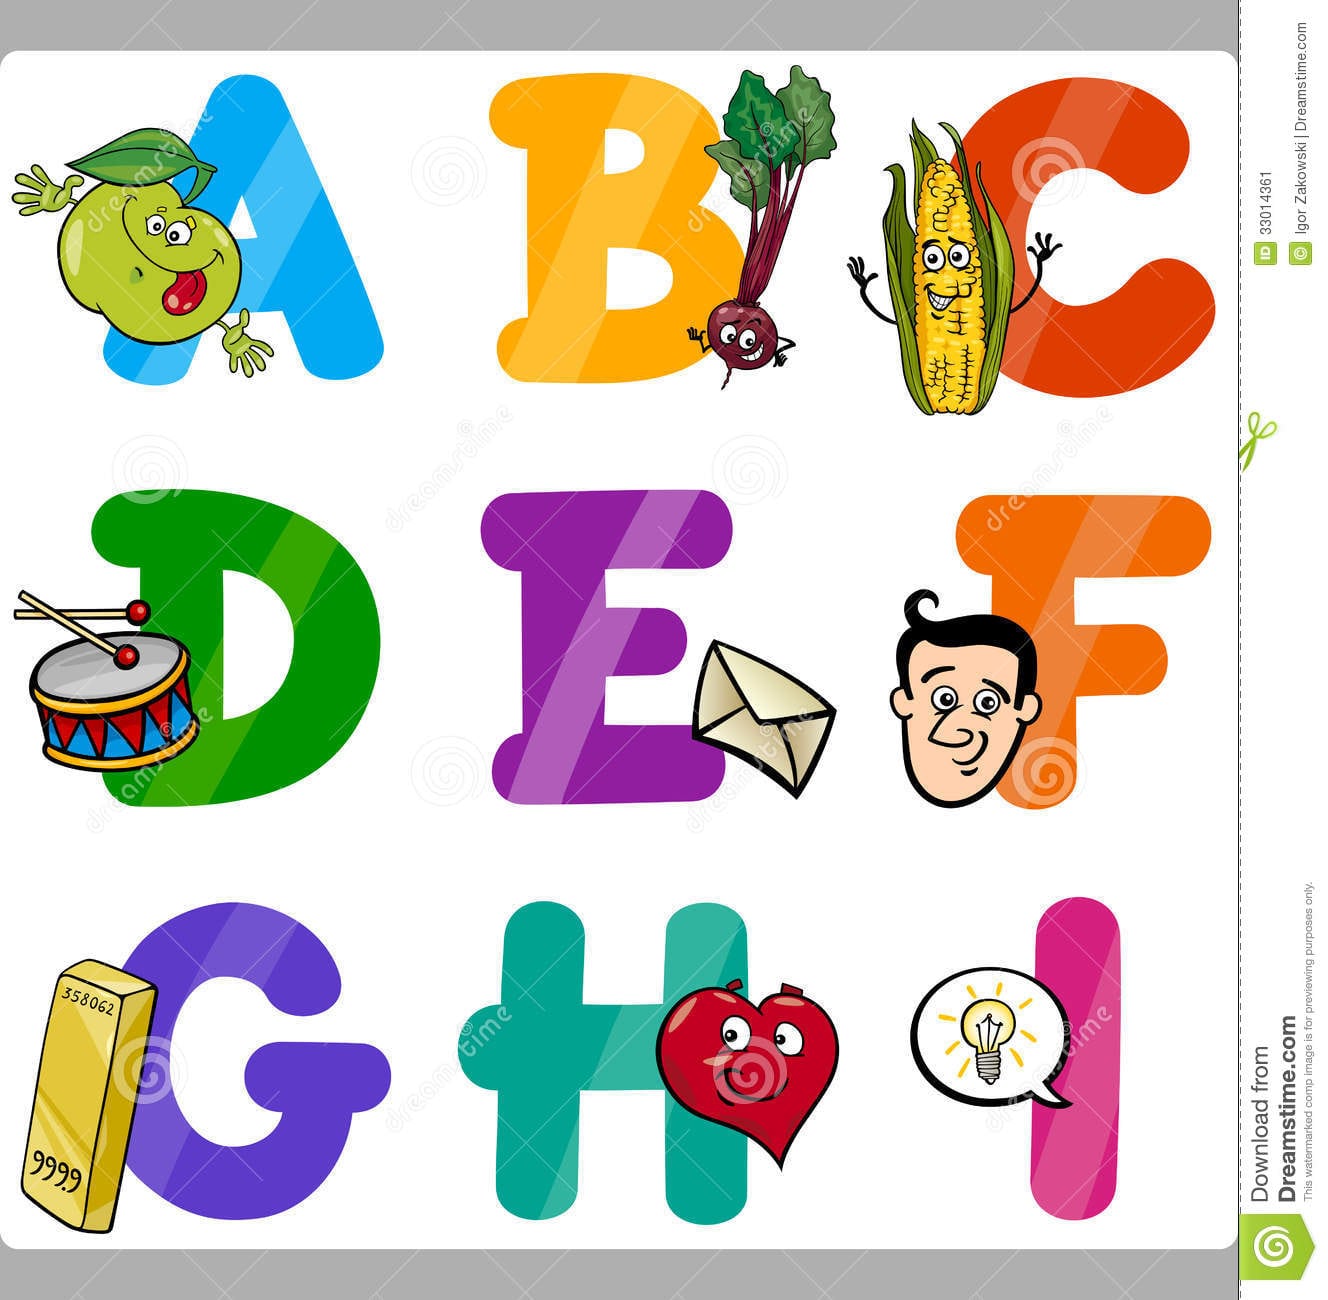 Letras Do Alfabeto Dos Desenhos Animados Da EducaÃ§Ã£o Para CrianÃ§as